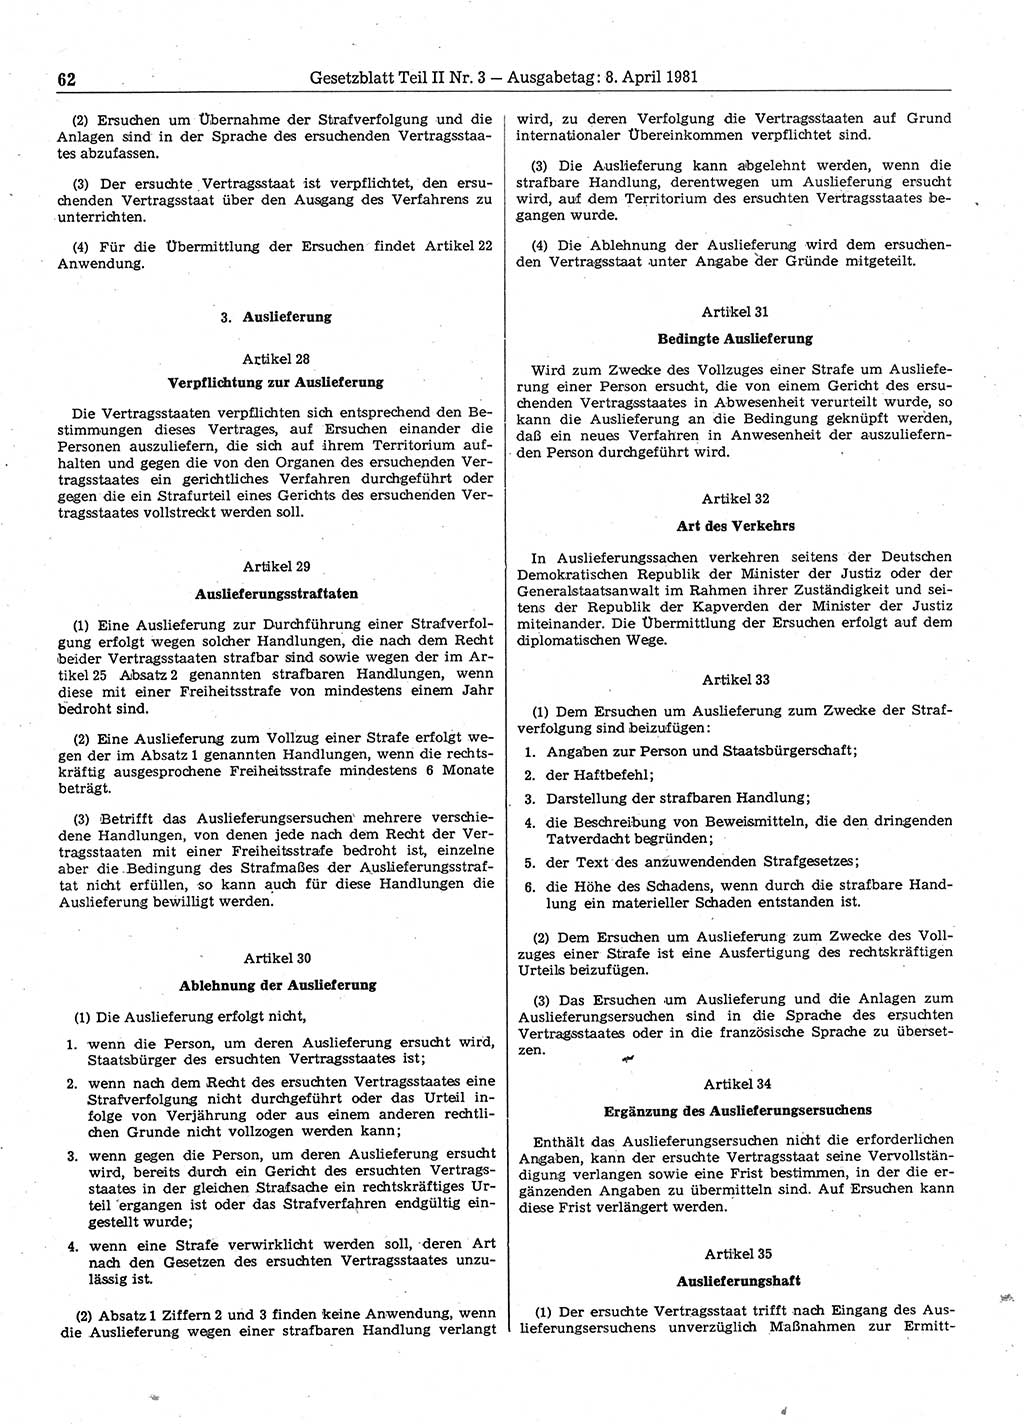 Gesetzblatt (GBl.) der Deutschen Demokratischen Republik (DDR) Teil ⅠⅠ 1981, Seite 62 (GBl. DDR ⅠⅠ 1981, S. 62)